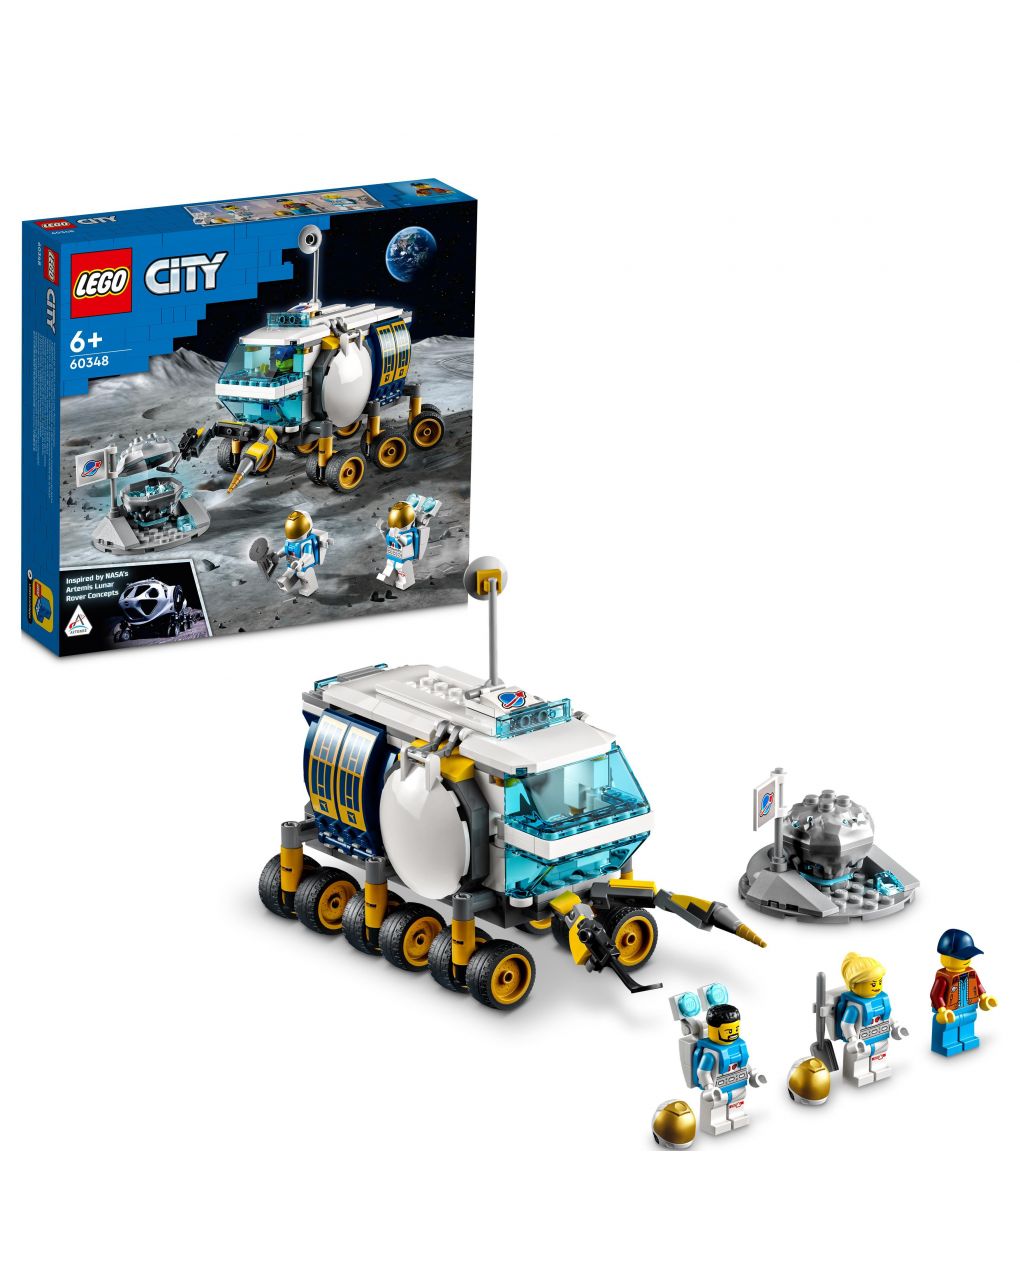 Lunar rover 60348 - cidade de lego - LEGO